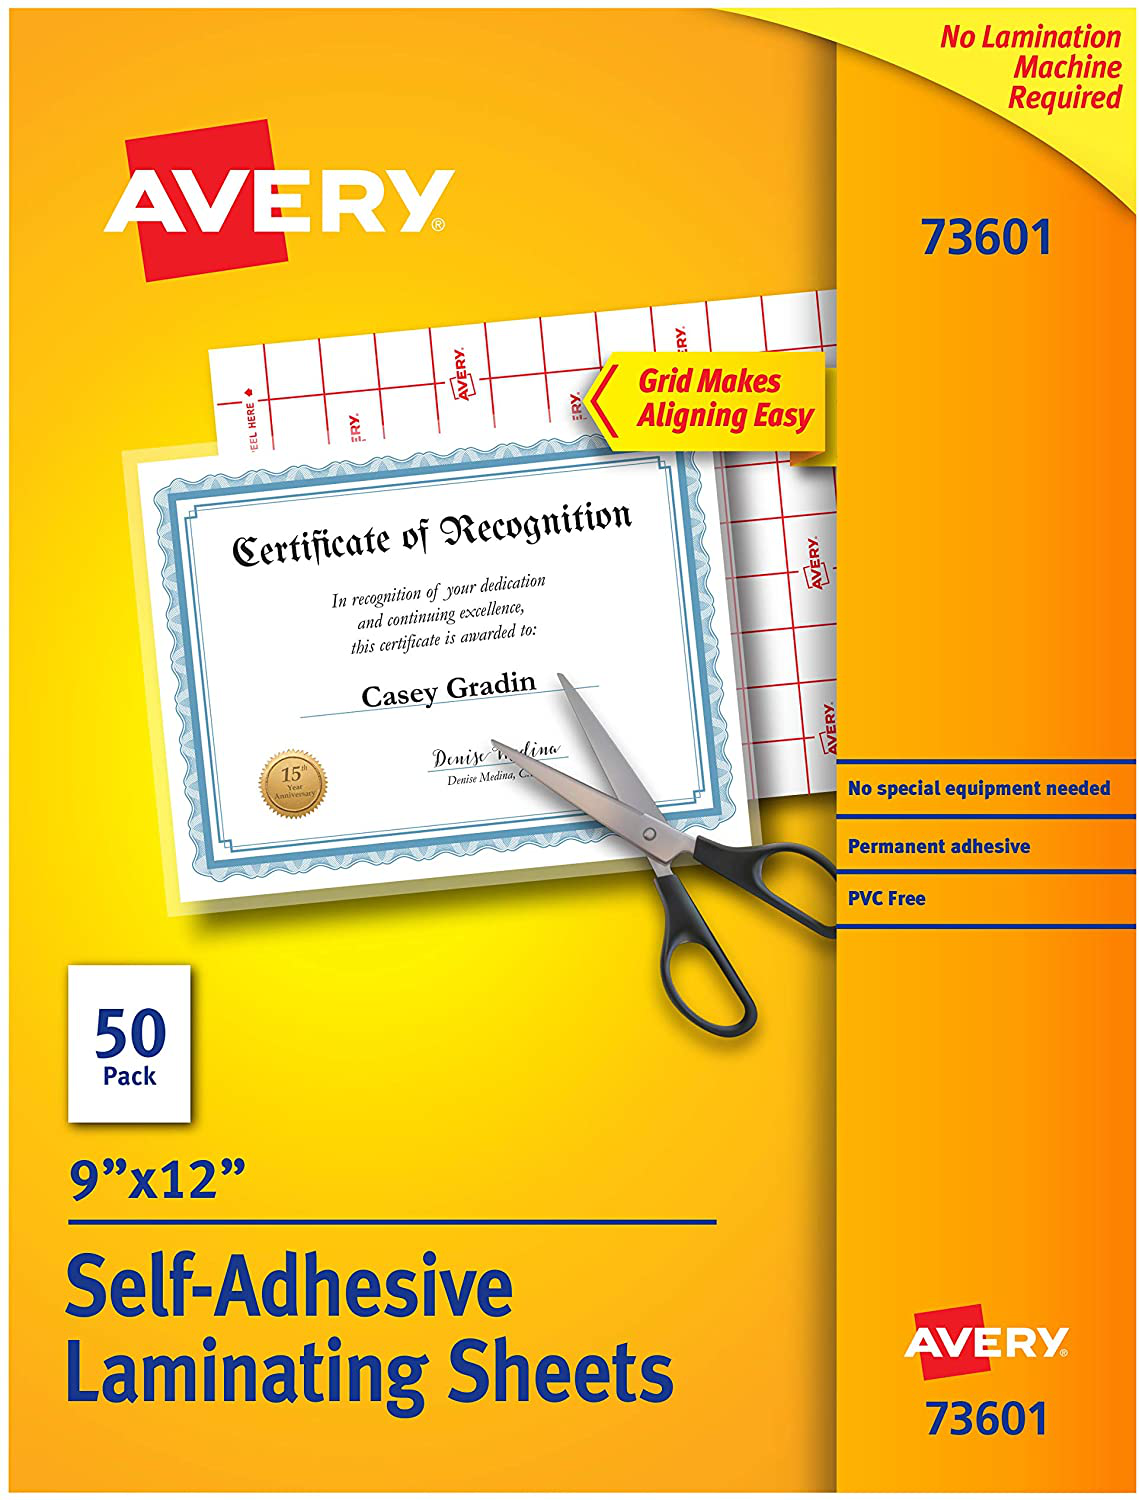 Avery Clear Laminating Sheets, 9" x 12", Permanent Self-Adhesive, 50 Sheets (73601)